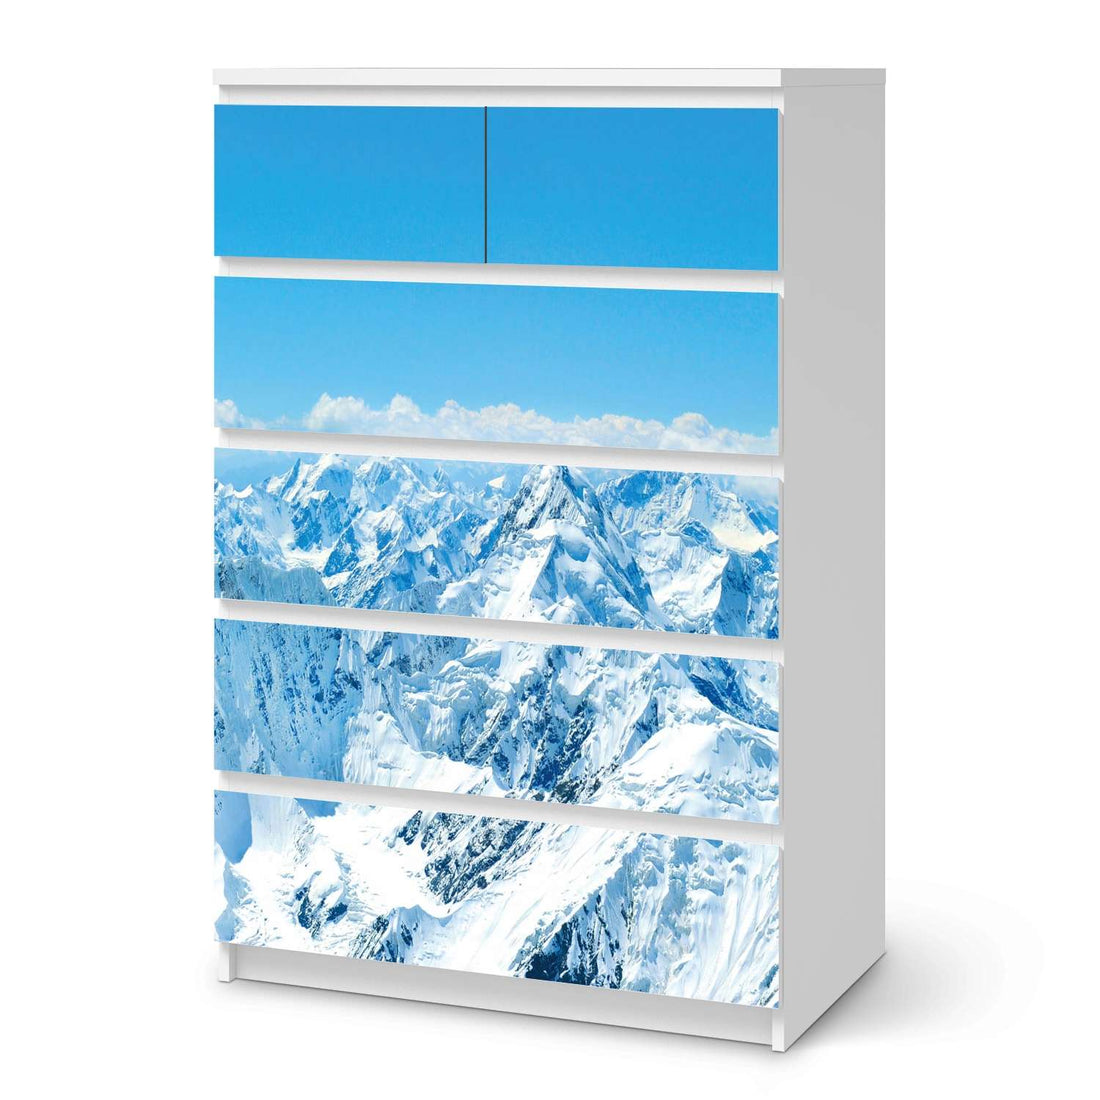 Möbel Klebefolie Himalaya - IKEA Malm Kommode 6 Schubladen (hoch)  - weiss